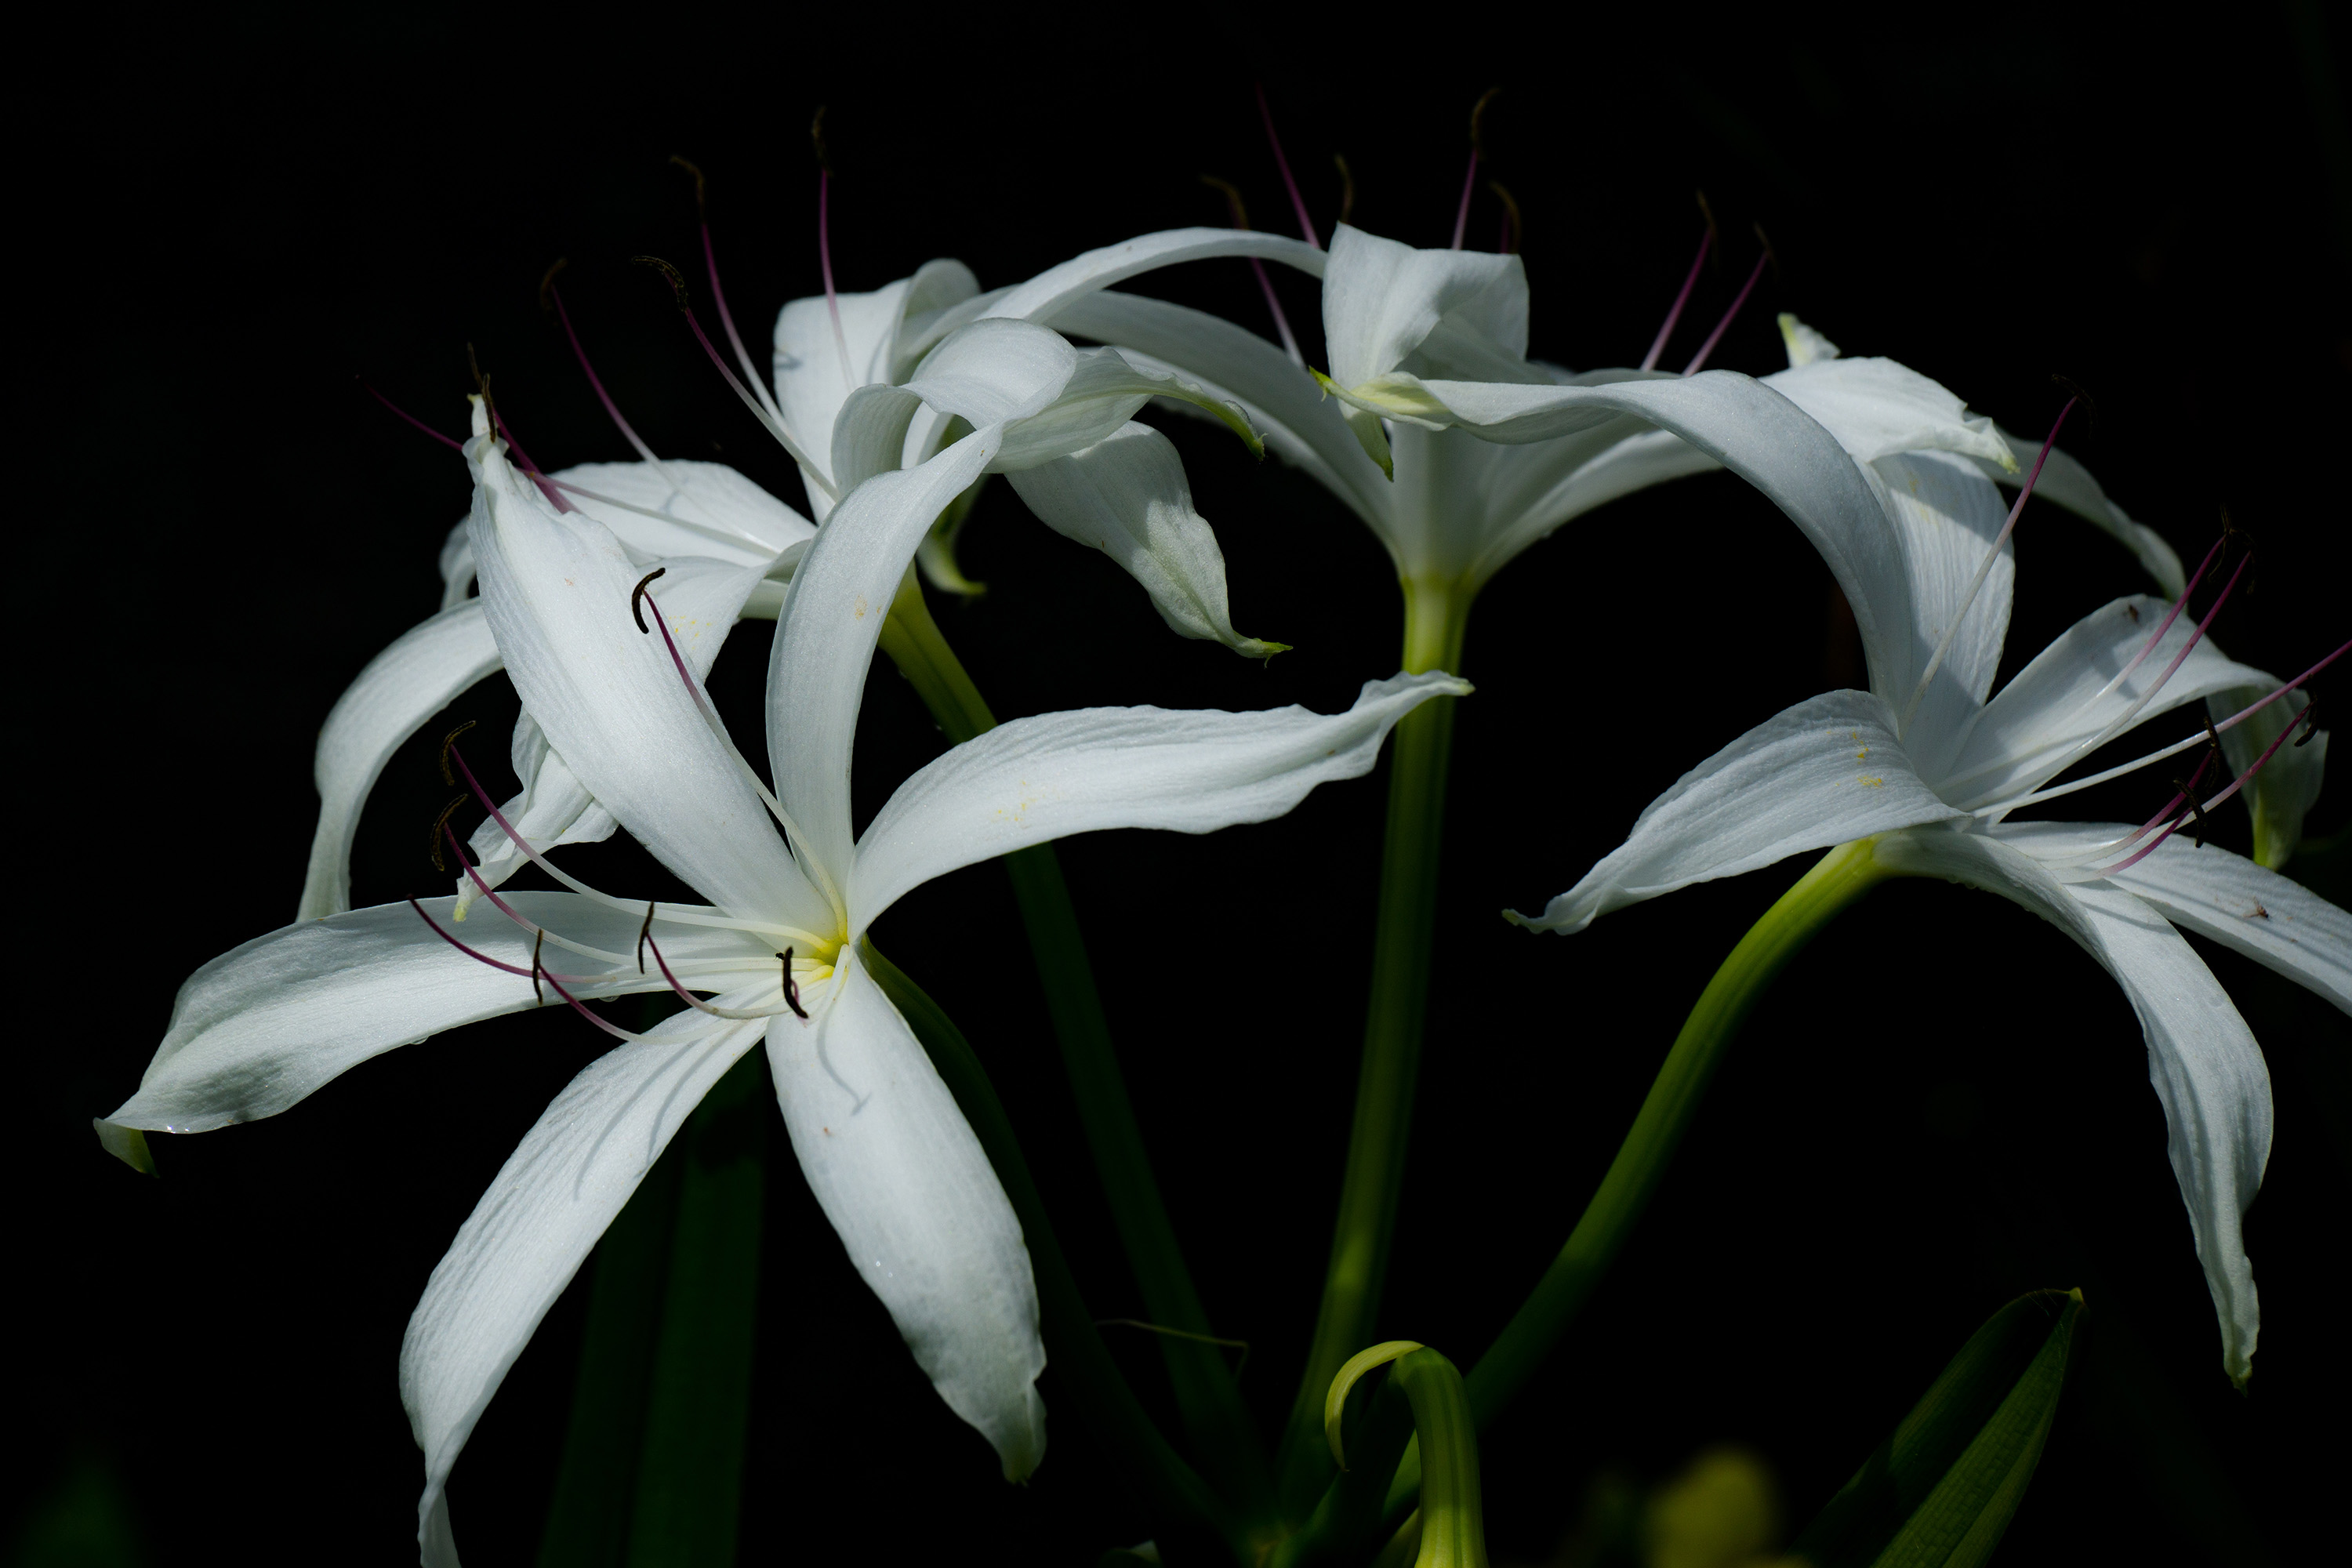 White lillies against a dark background